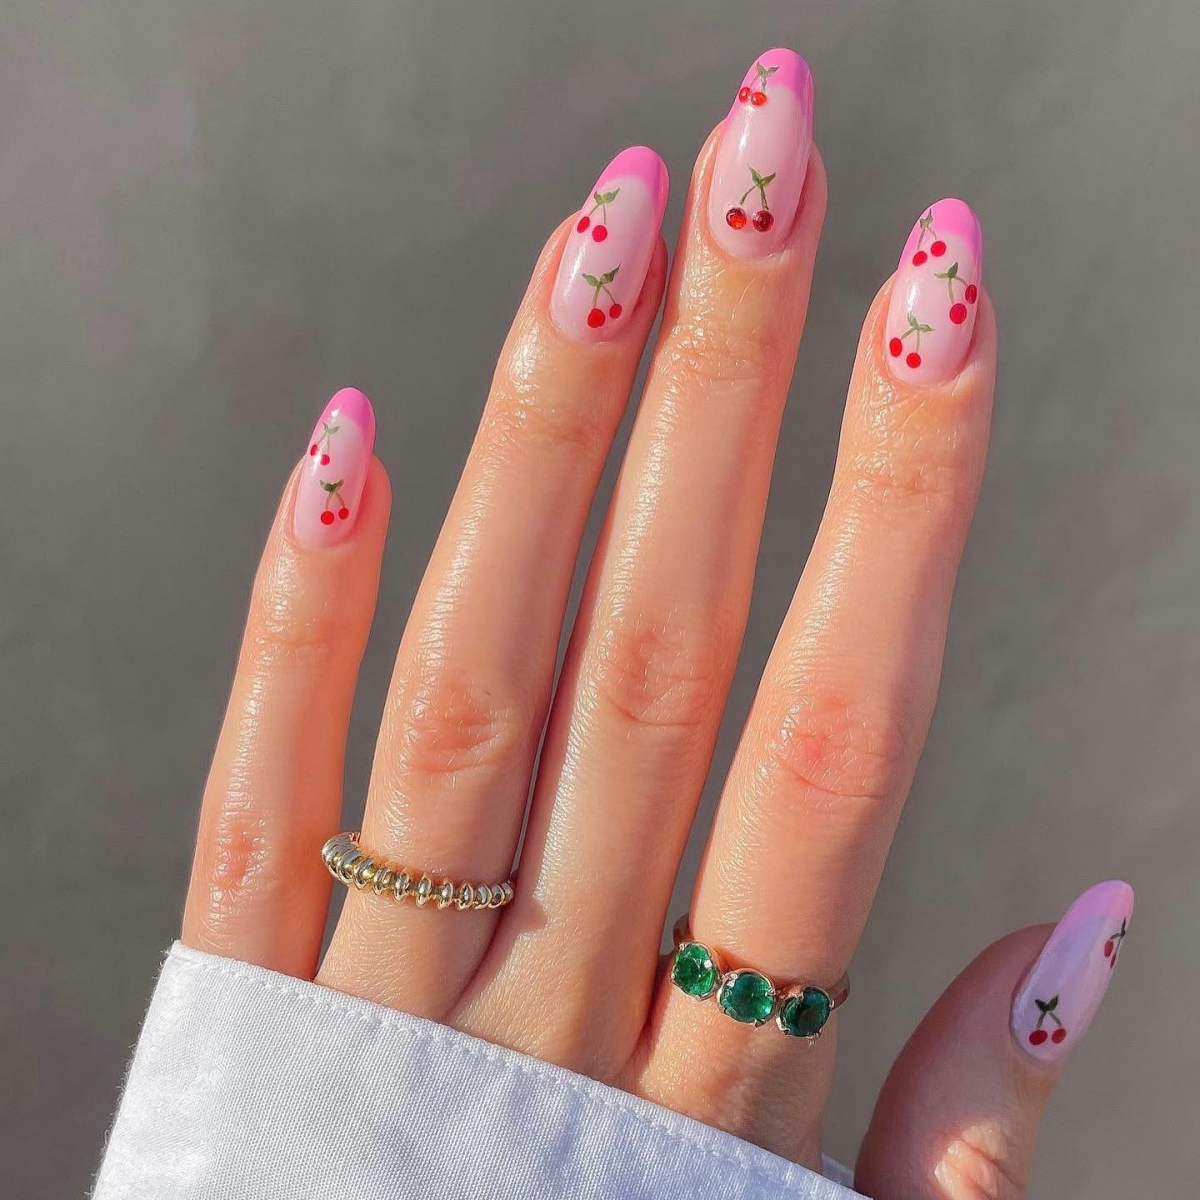 bam glam nails cherry nails fingernaegel sommerfarben